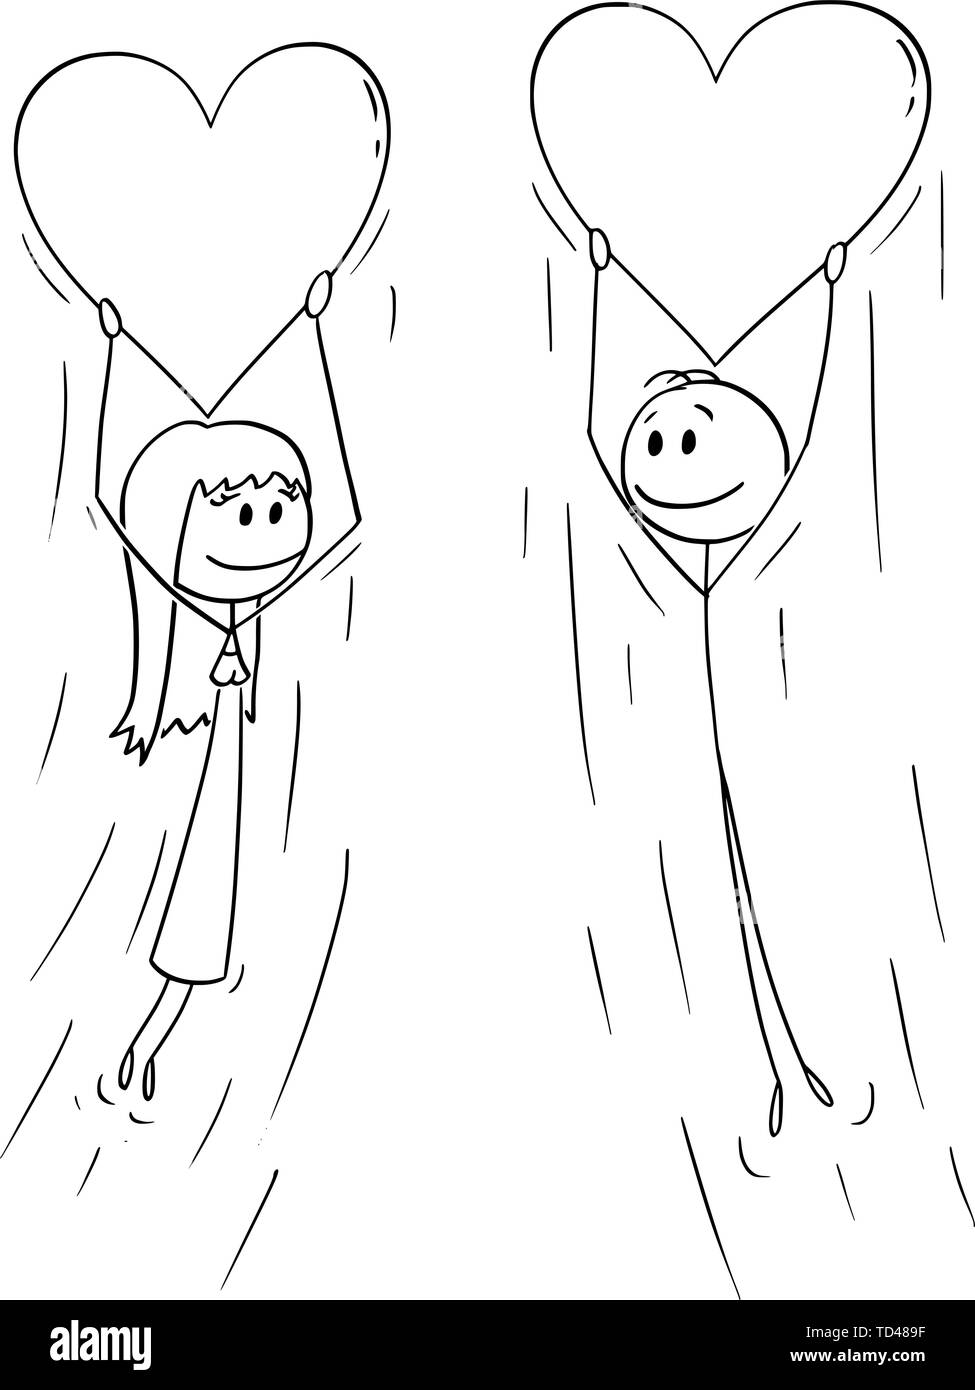 Vektor cartoon Strichmännchen Zeichnen konzeptionelle Darstellung der Paar von Frau und Mann in Liebe Holding großen aufblasbaren Herz Ballon und fliegen zusammen. Stock Vektor